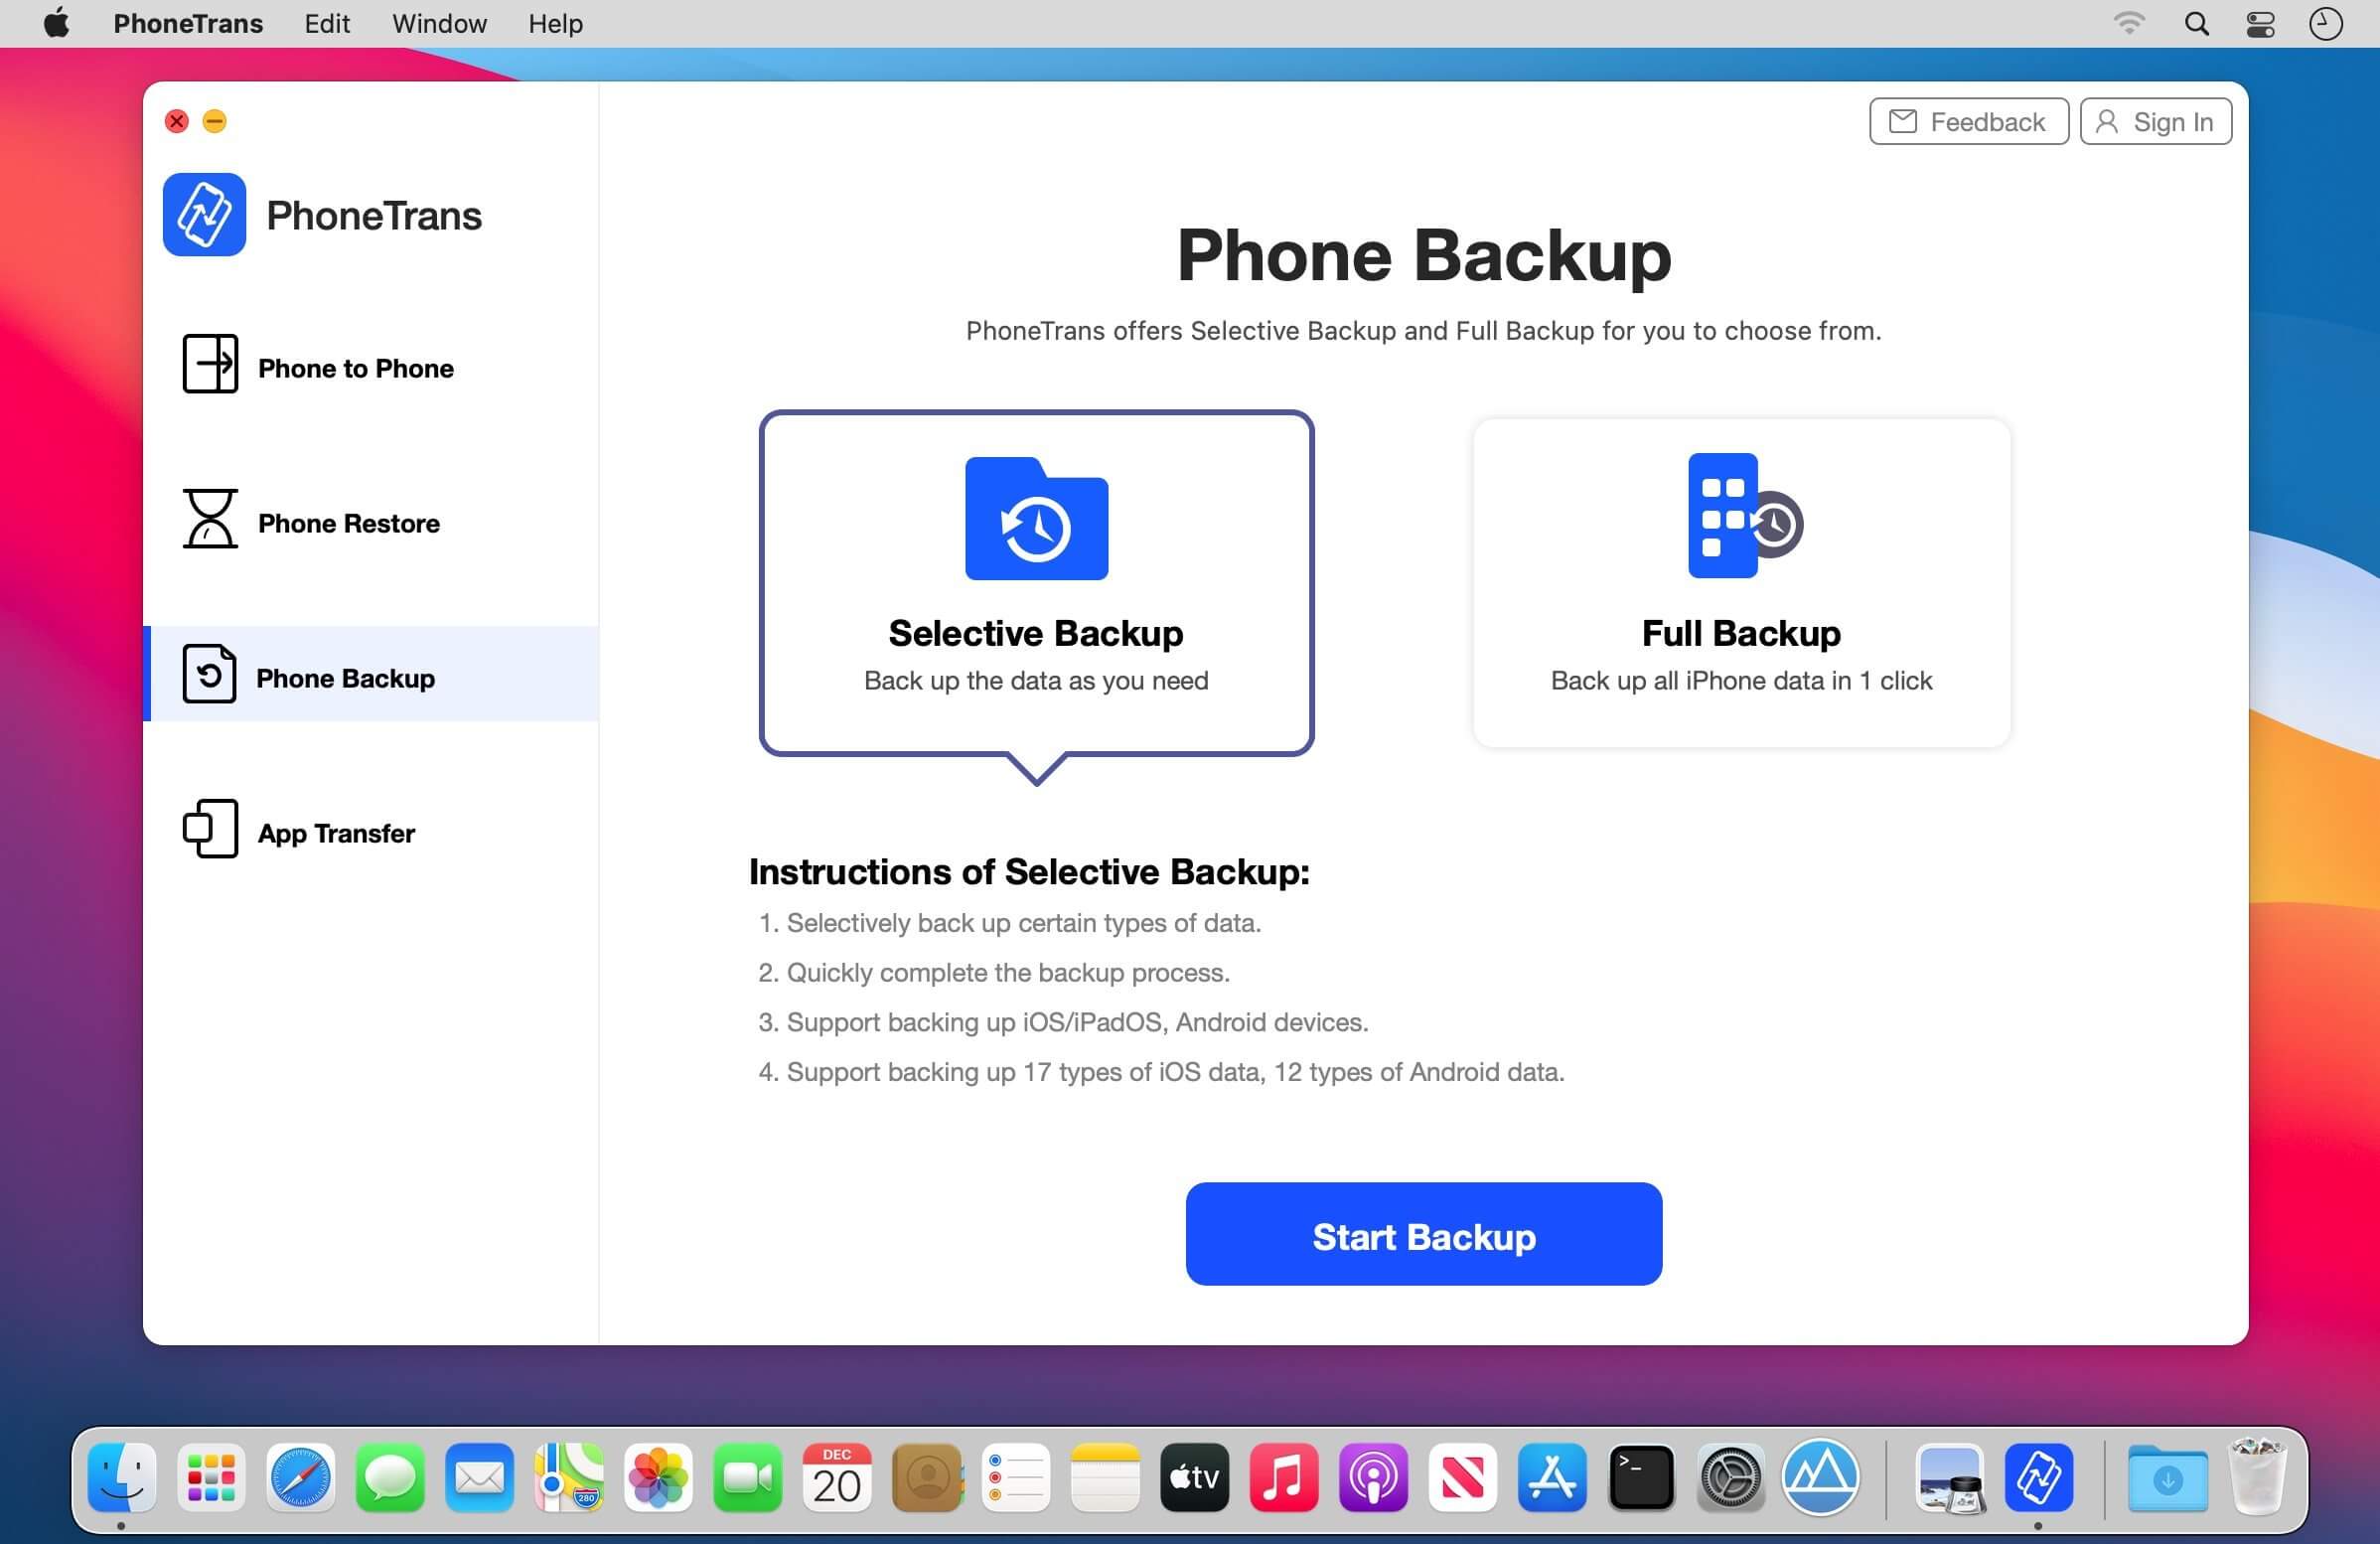 PhoneTrans 5.1.0 (20210113) download | macOS